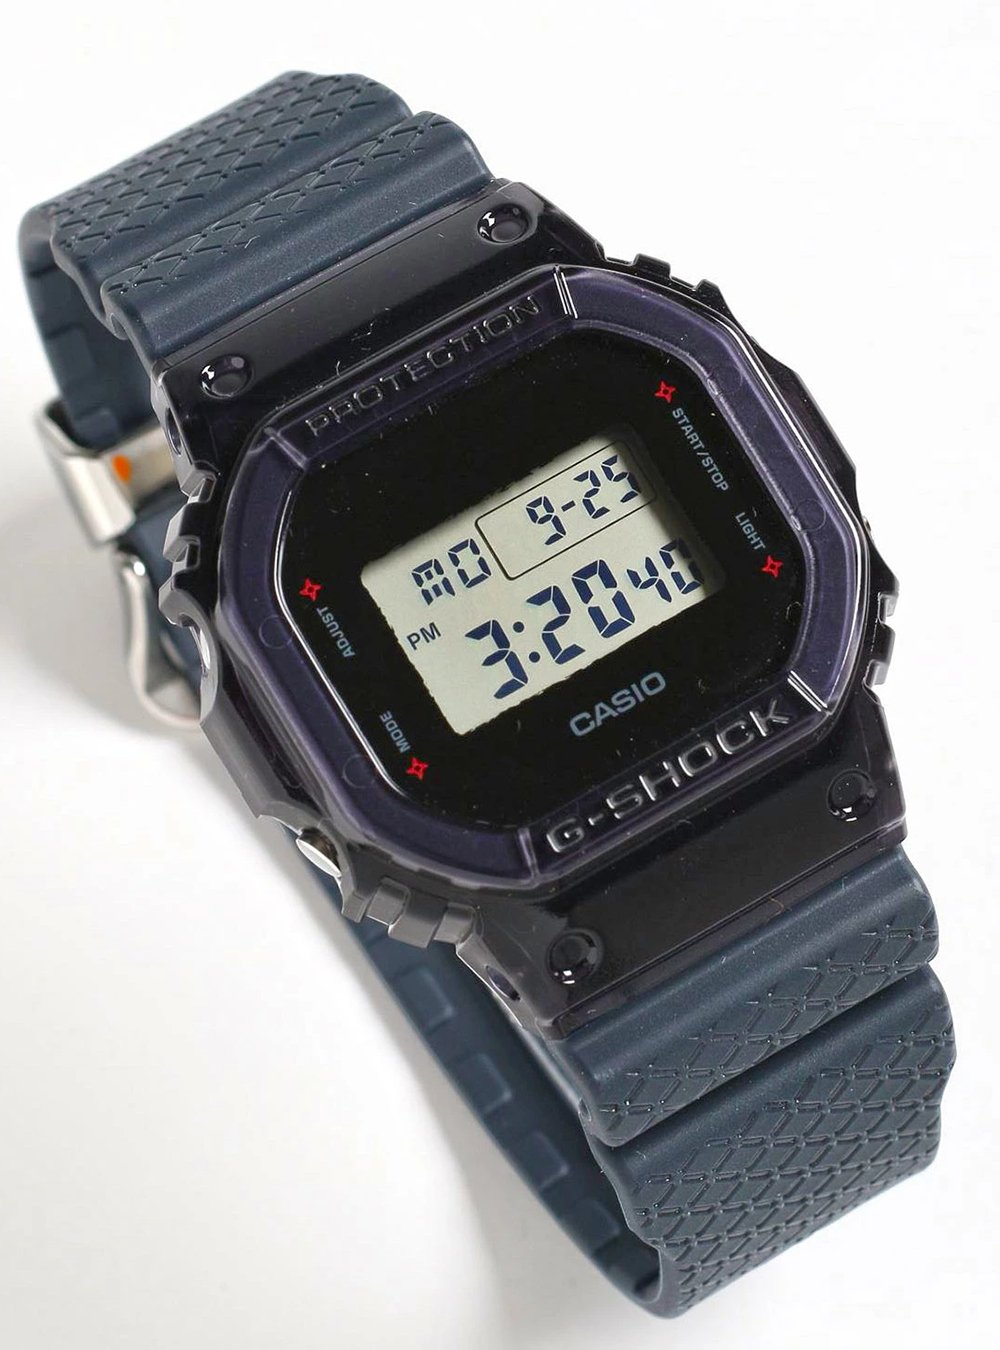 最新入荷 GーSHOCK ジムビーム オリジナル DW−5600ベース 時計 - www ...